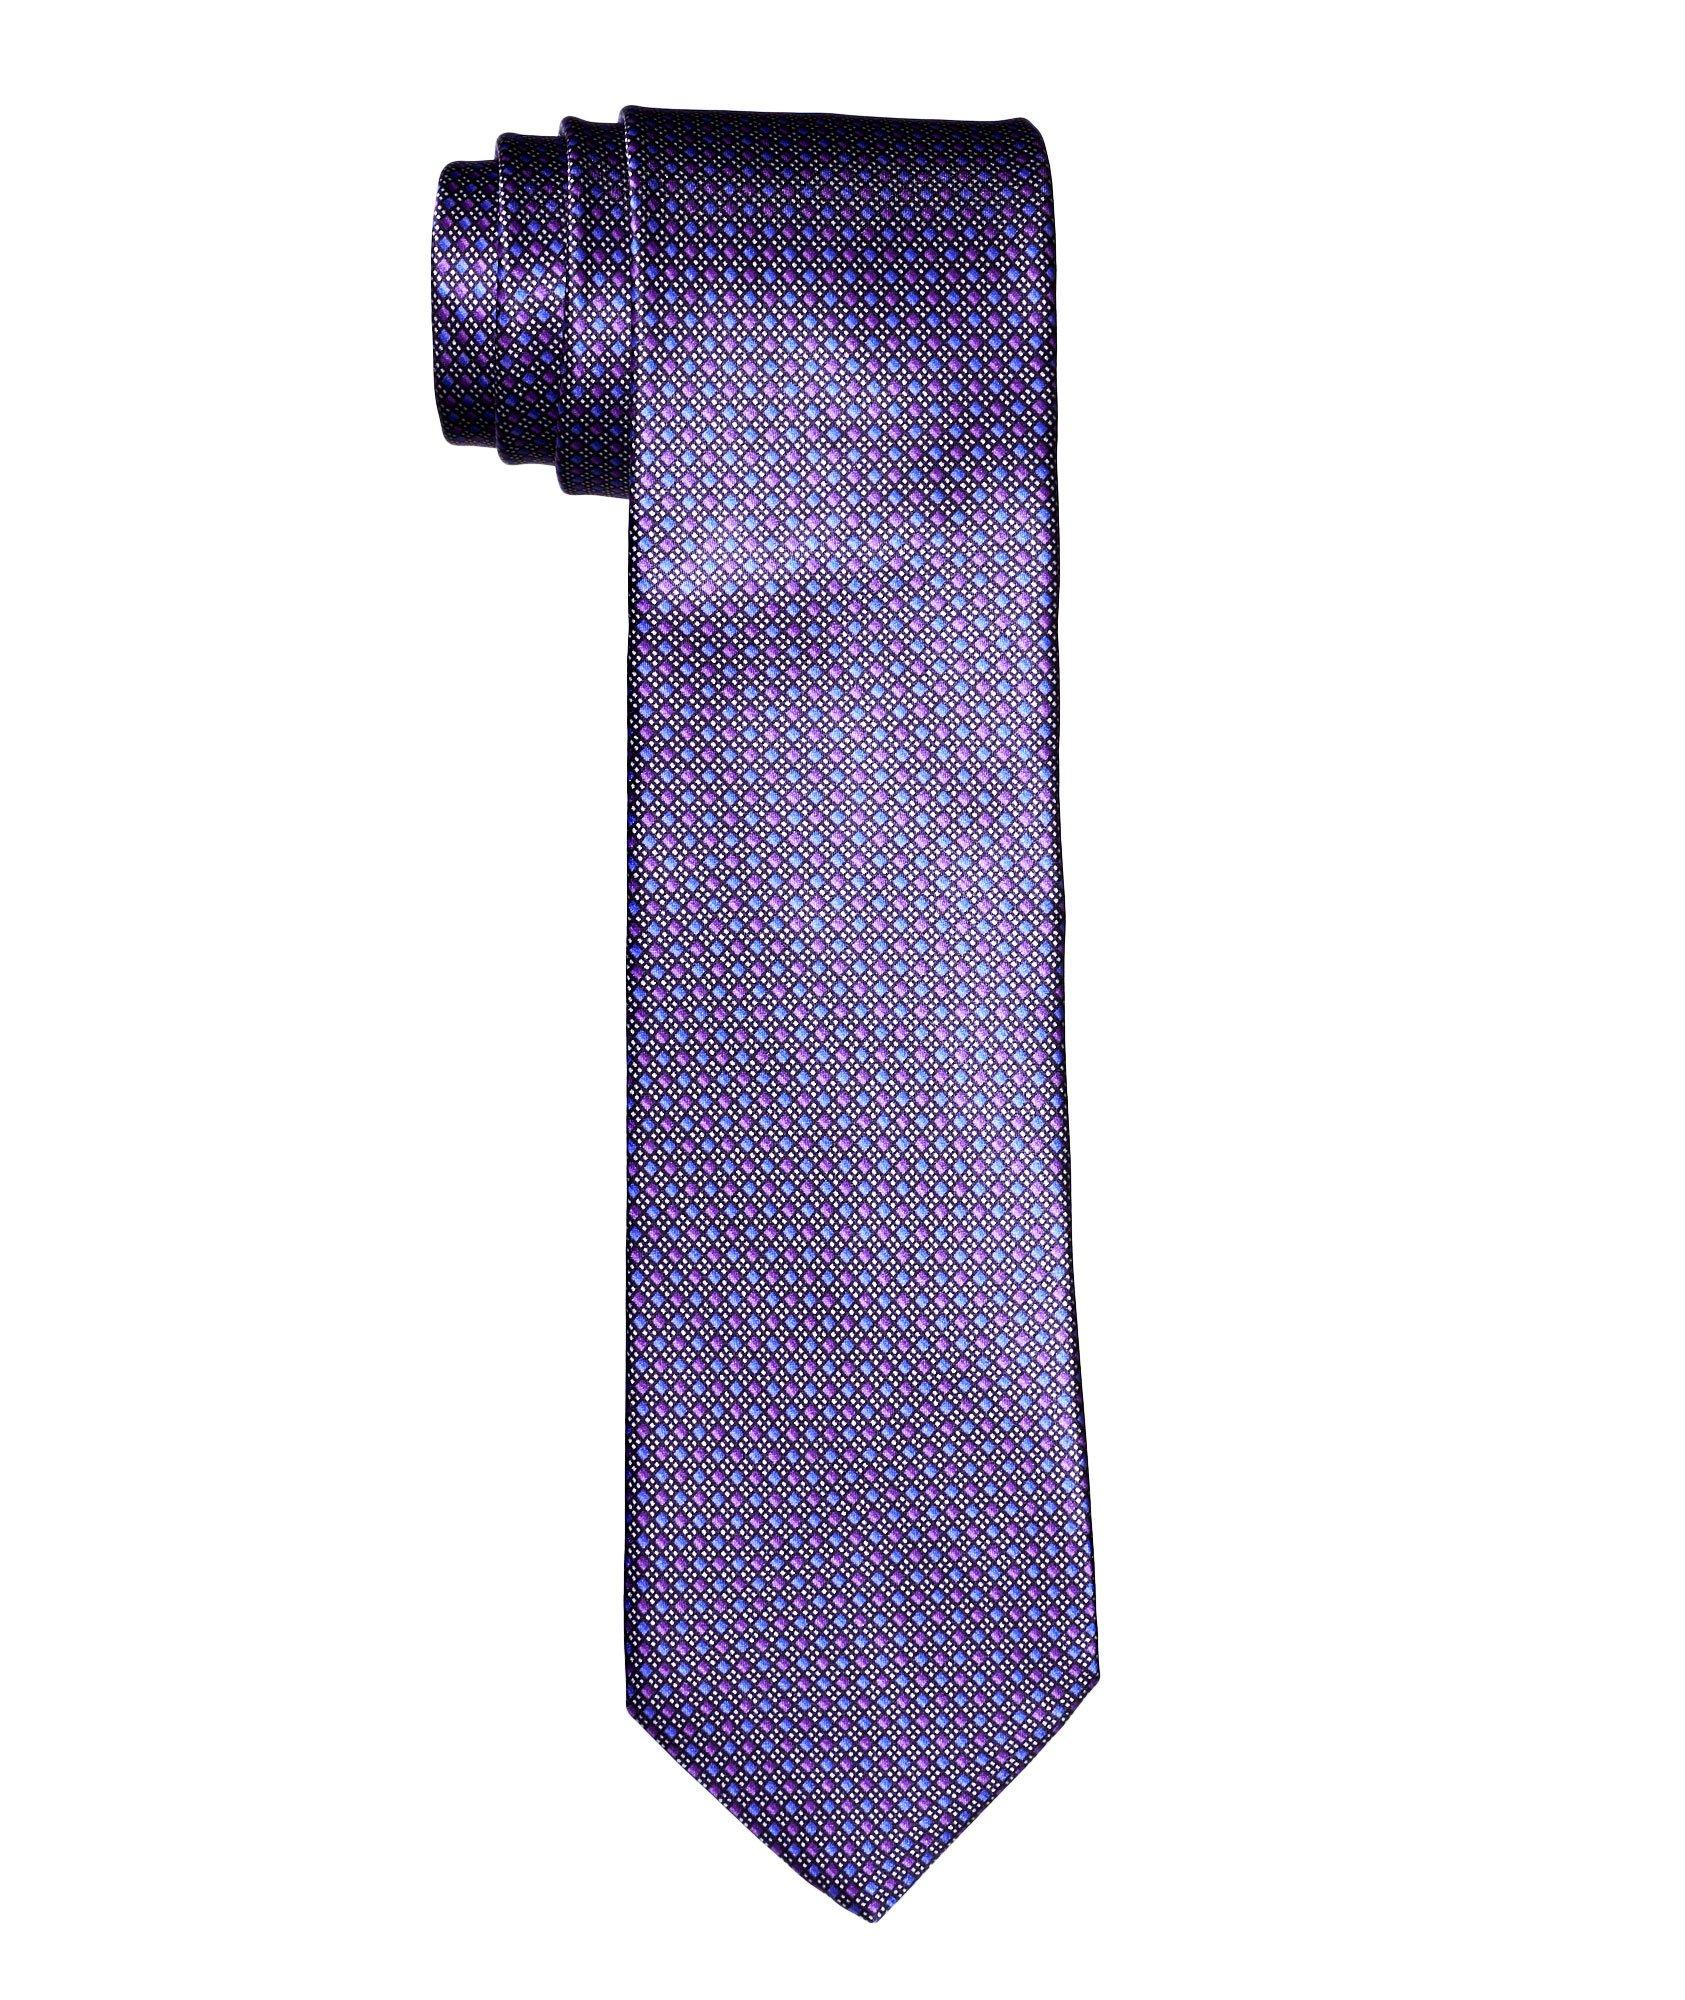 Cravate imprimée en soie image 0